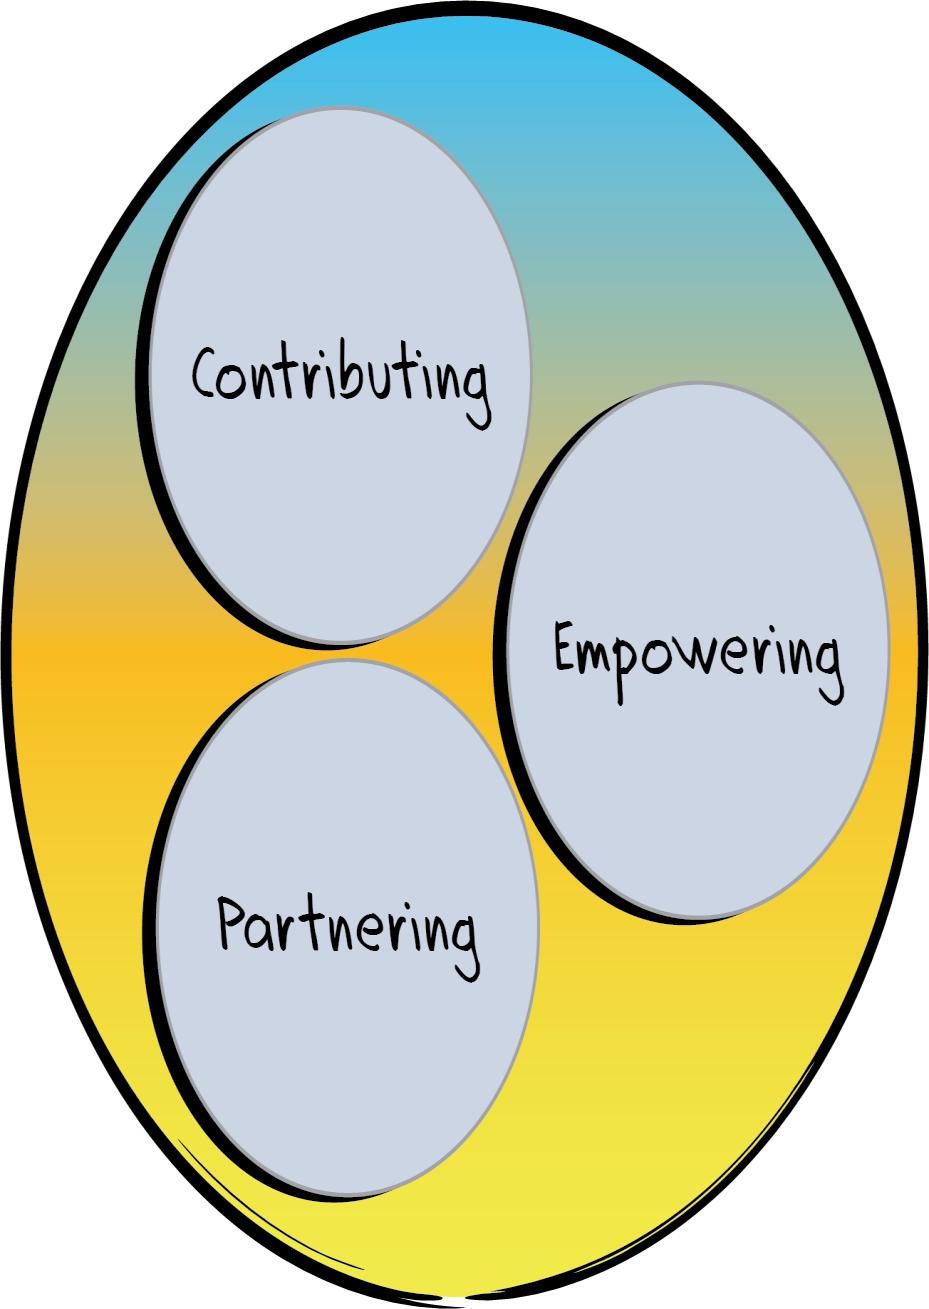 Performance Circle: Providing The Providing Performance Circle provides guidance for